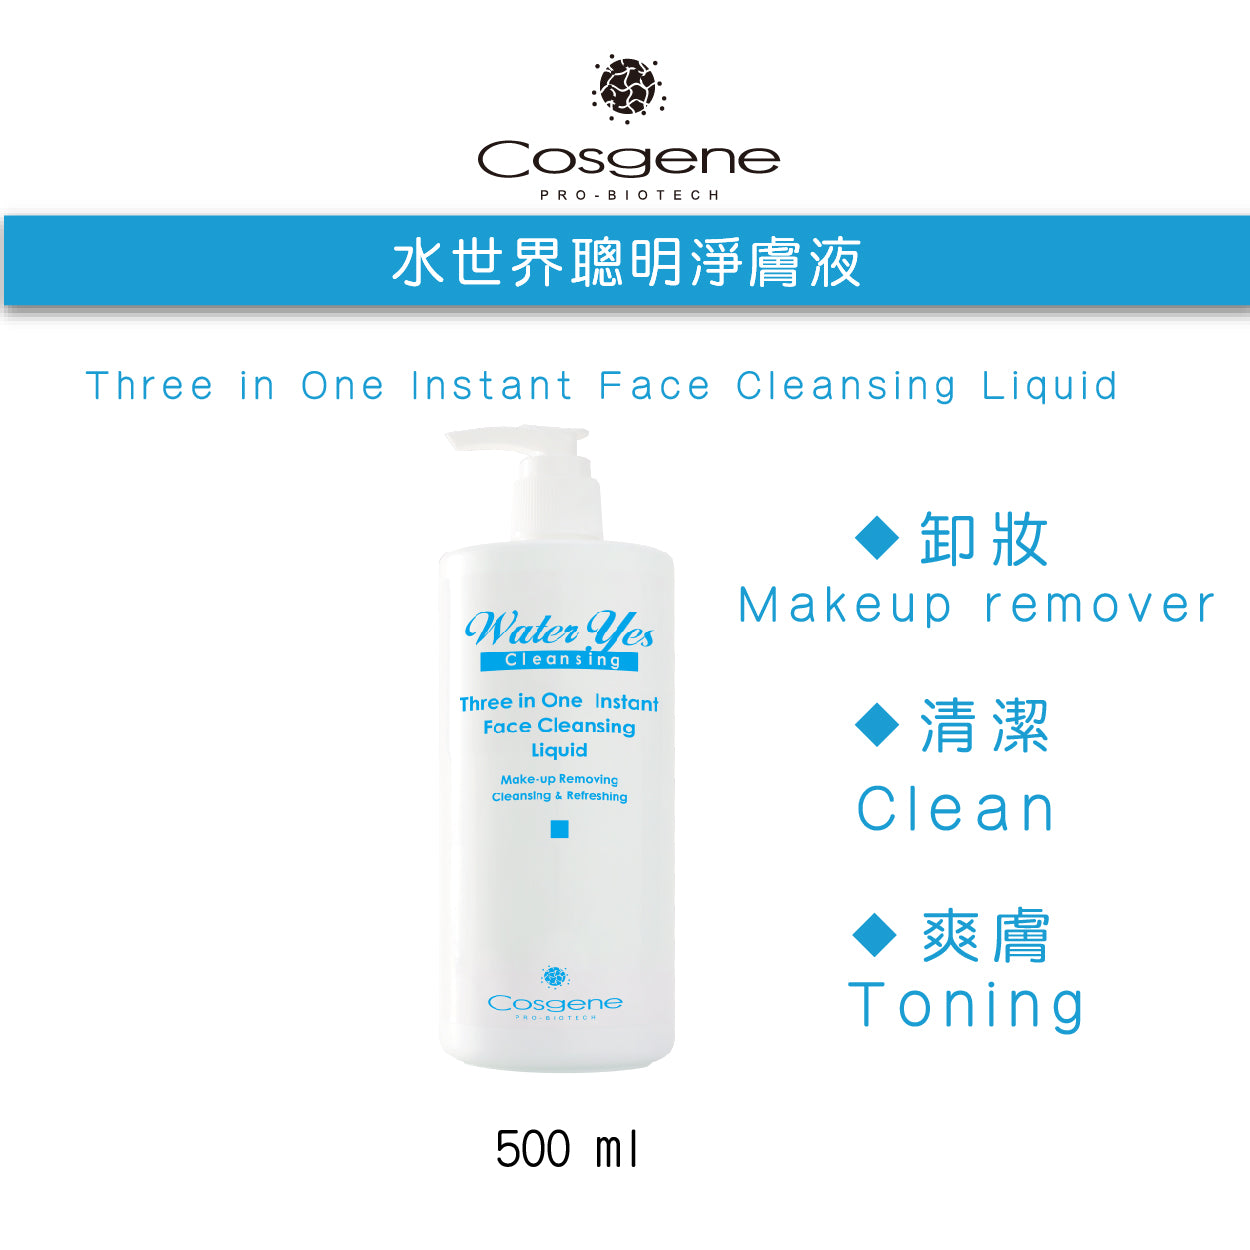 【COSGENE】水世界聰明淨膚液 Three in One Instant Face Cleansing Liquid